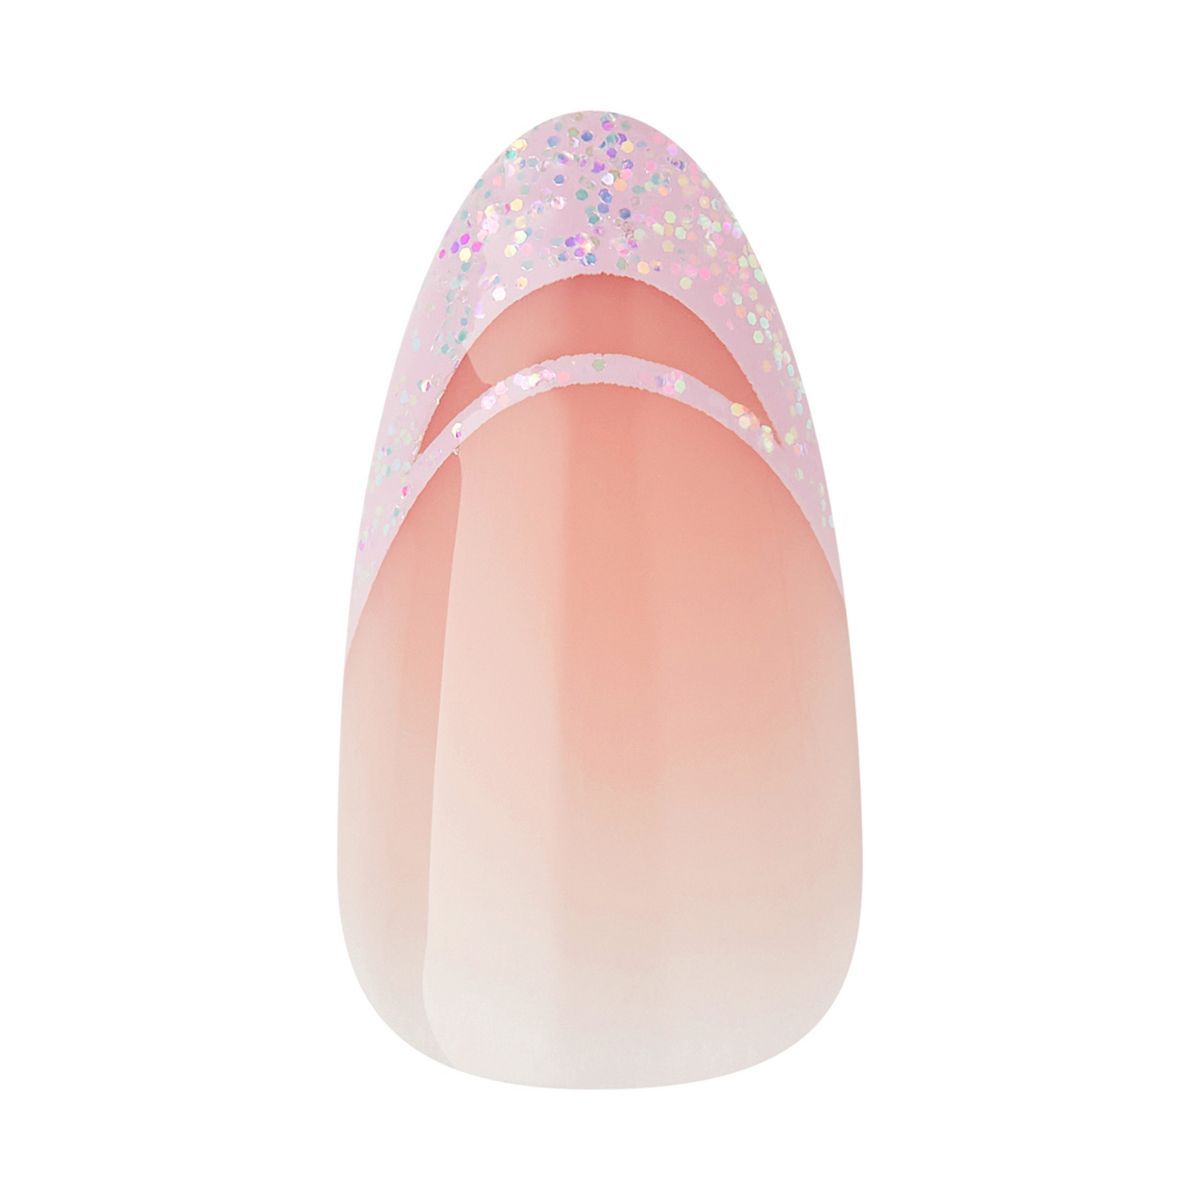 KISS Products Voguish Fantasy Nails Fake Nails - Rainy Night - 31ct | Target